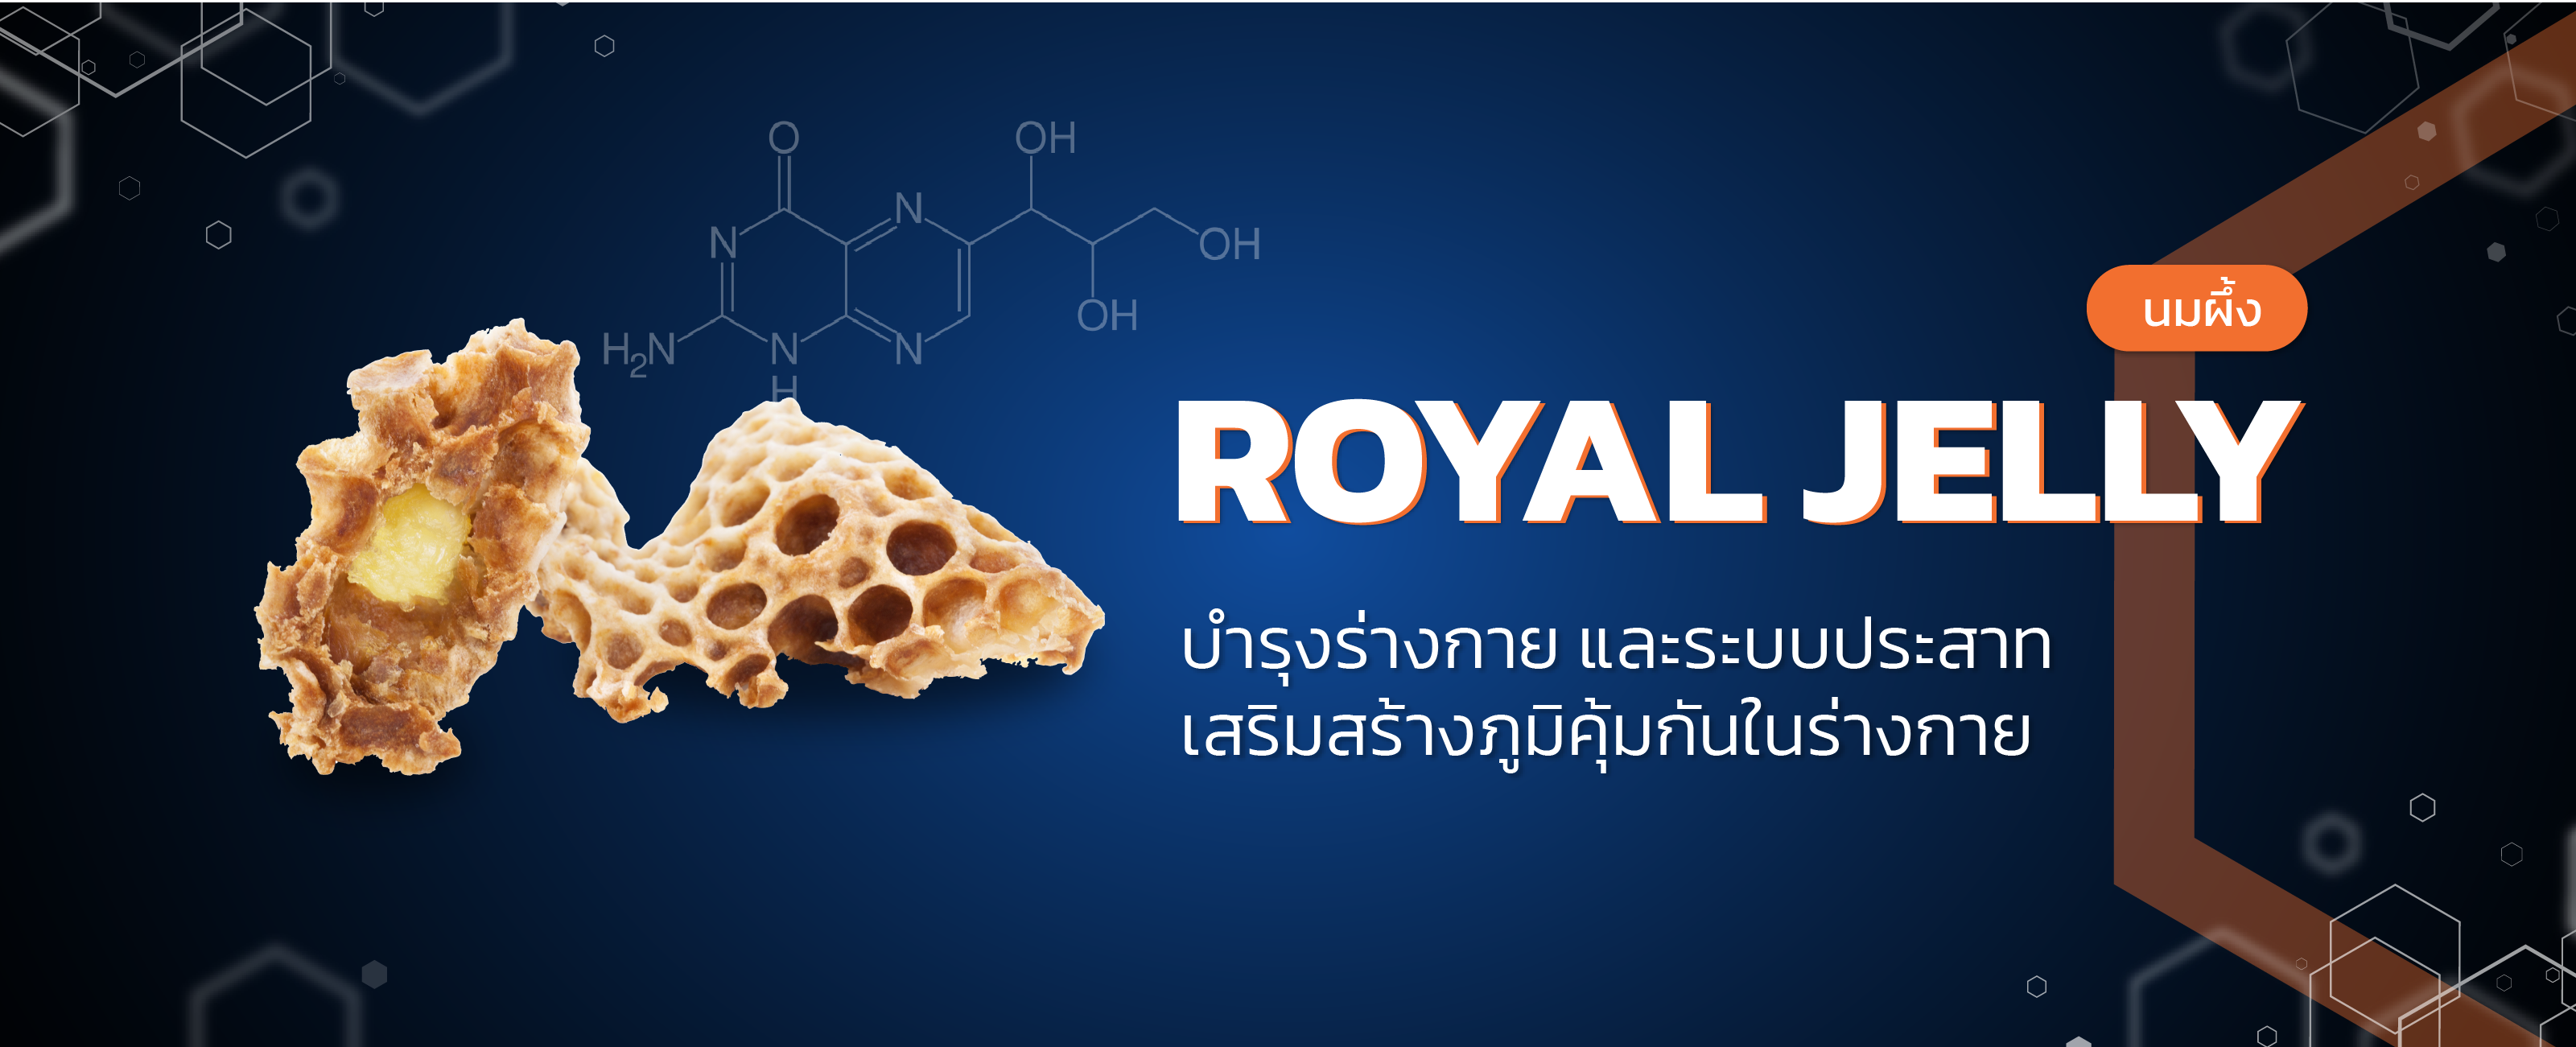 นมผึ้ง (Royal jelly)